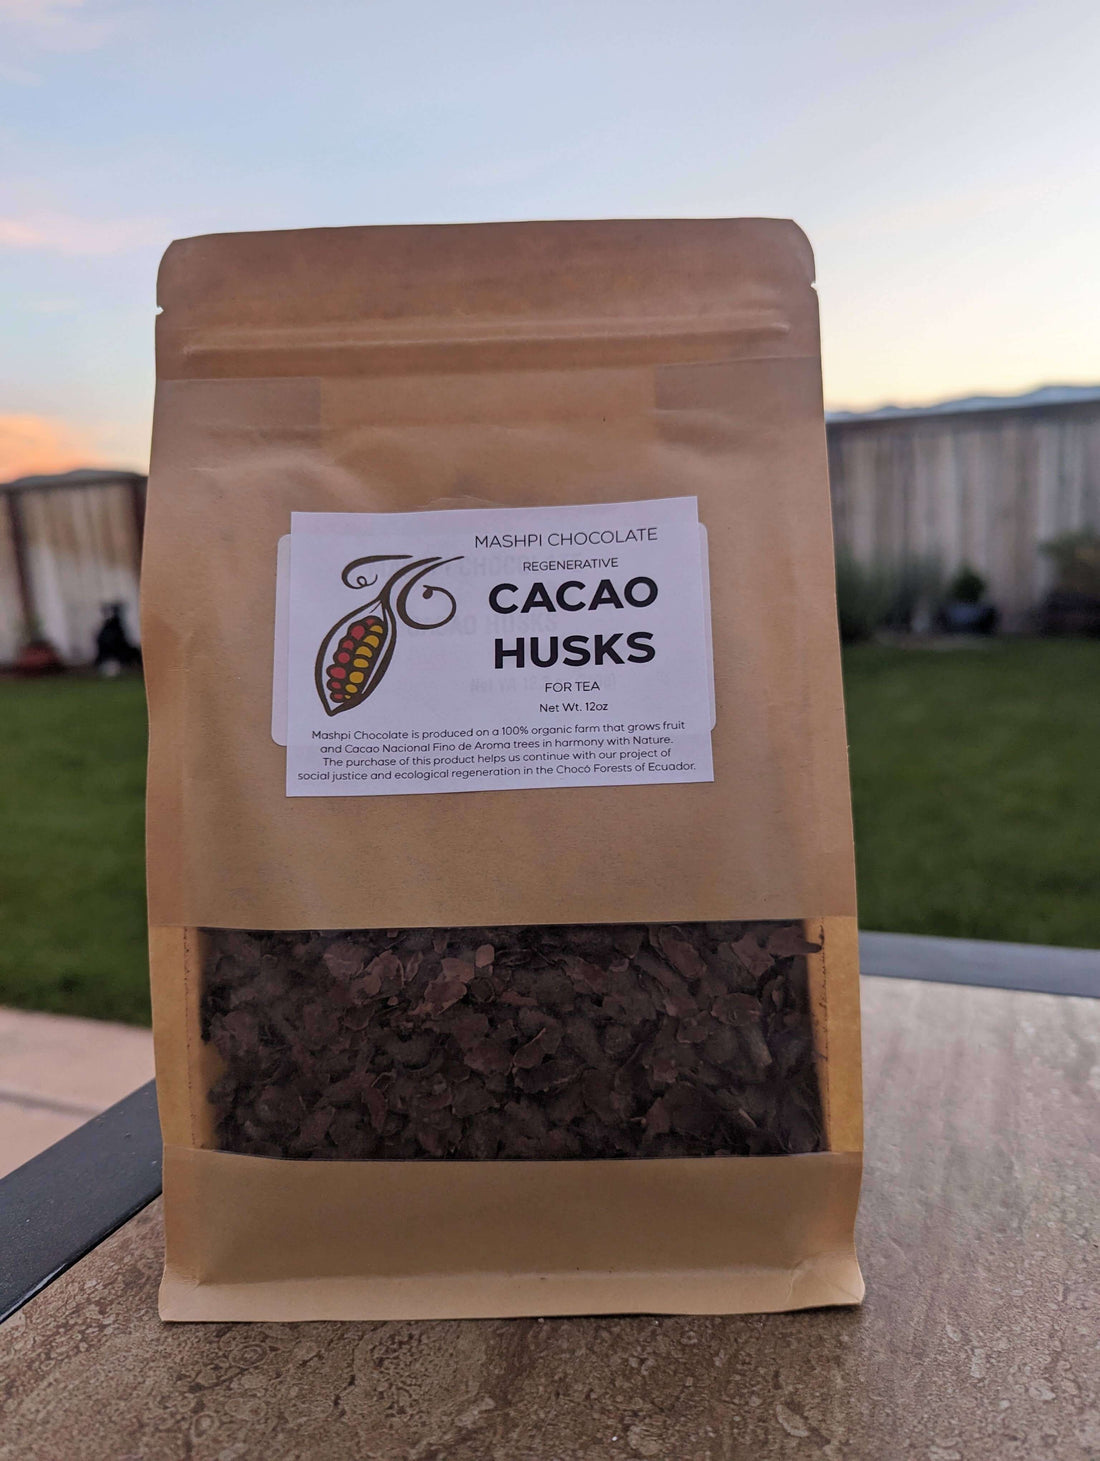 Cacao Husks for tea - Mashpi Chocolate 